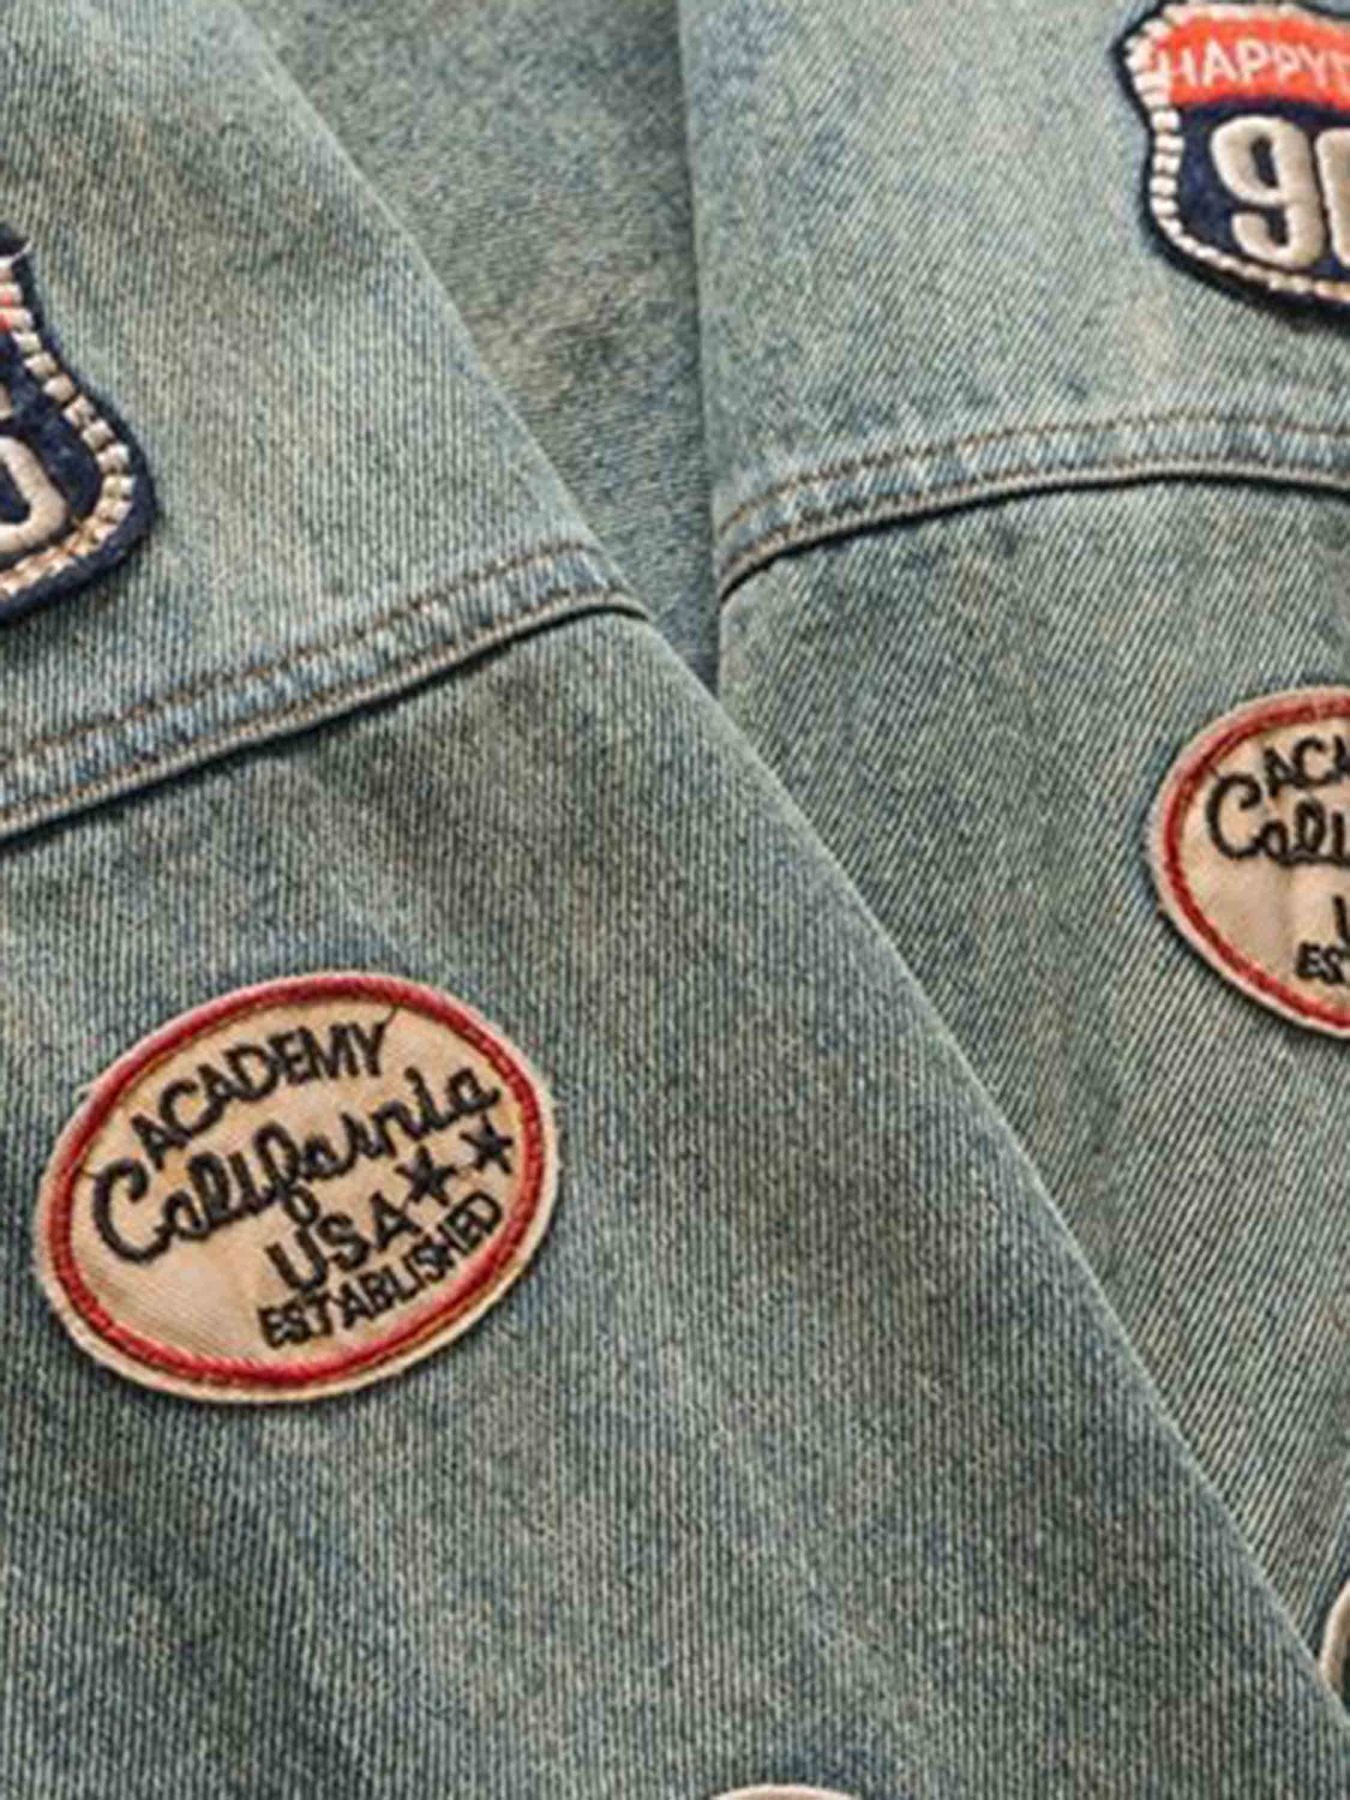 The Supermade Hip-hop Badge Embroidered Do-over Denim Jacket